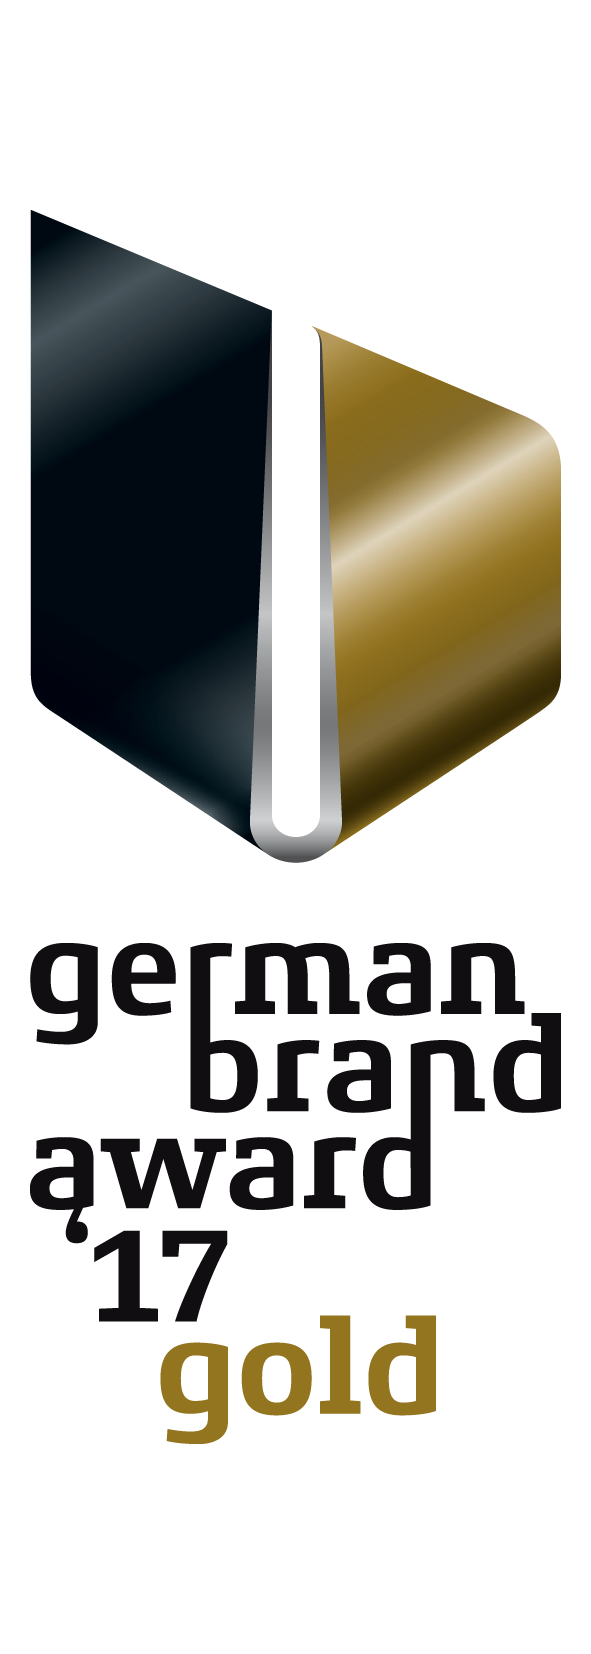 German Brand Award 2017 Gold for Zirkeltraining